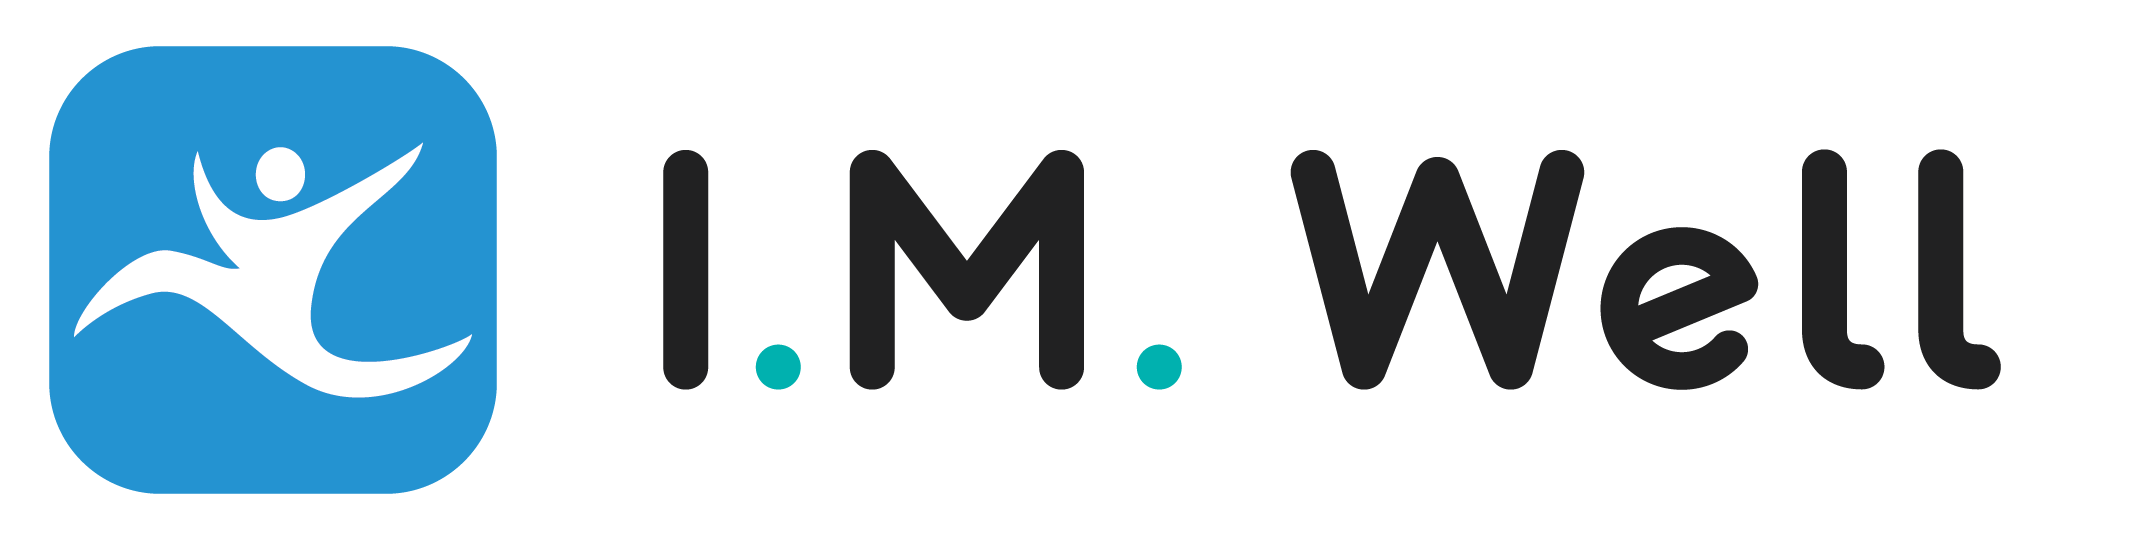 I.M.WELL full color logo